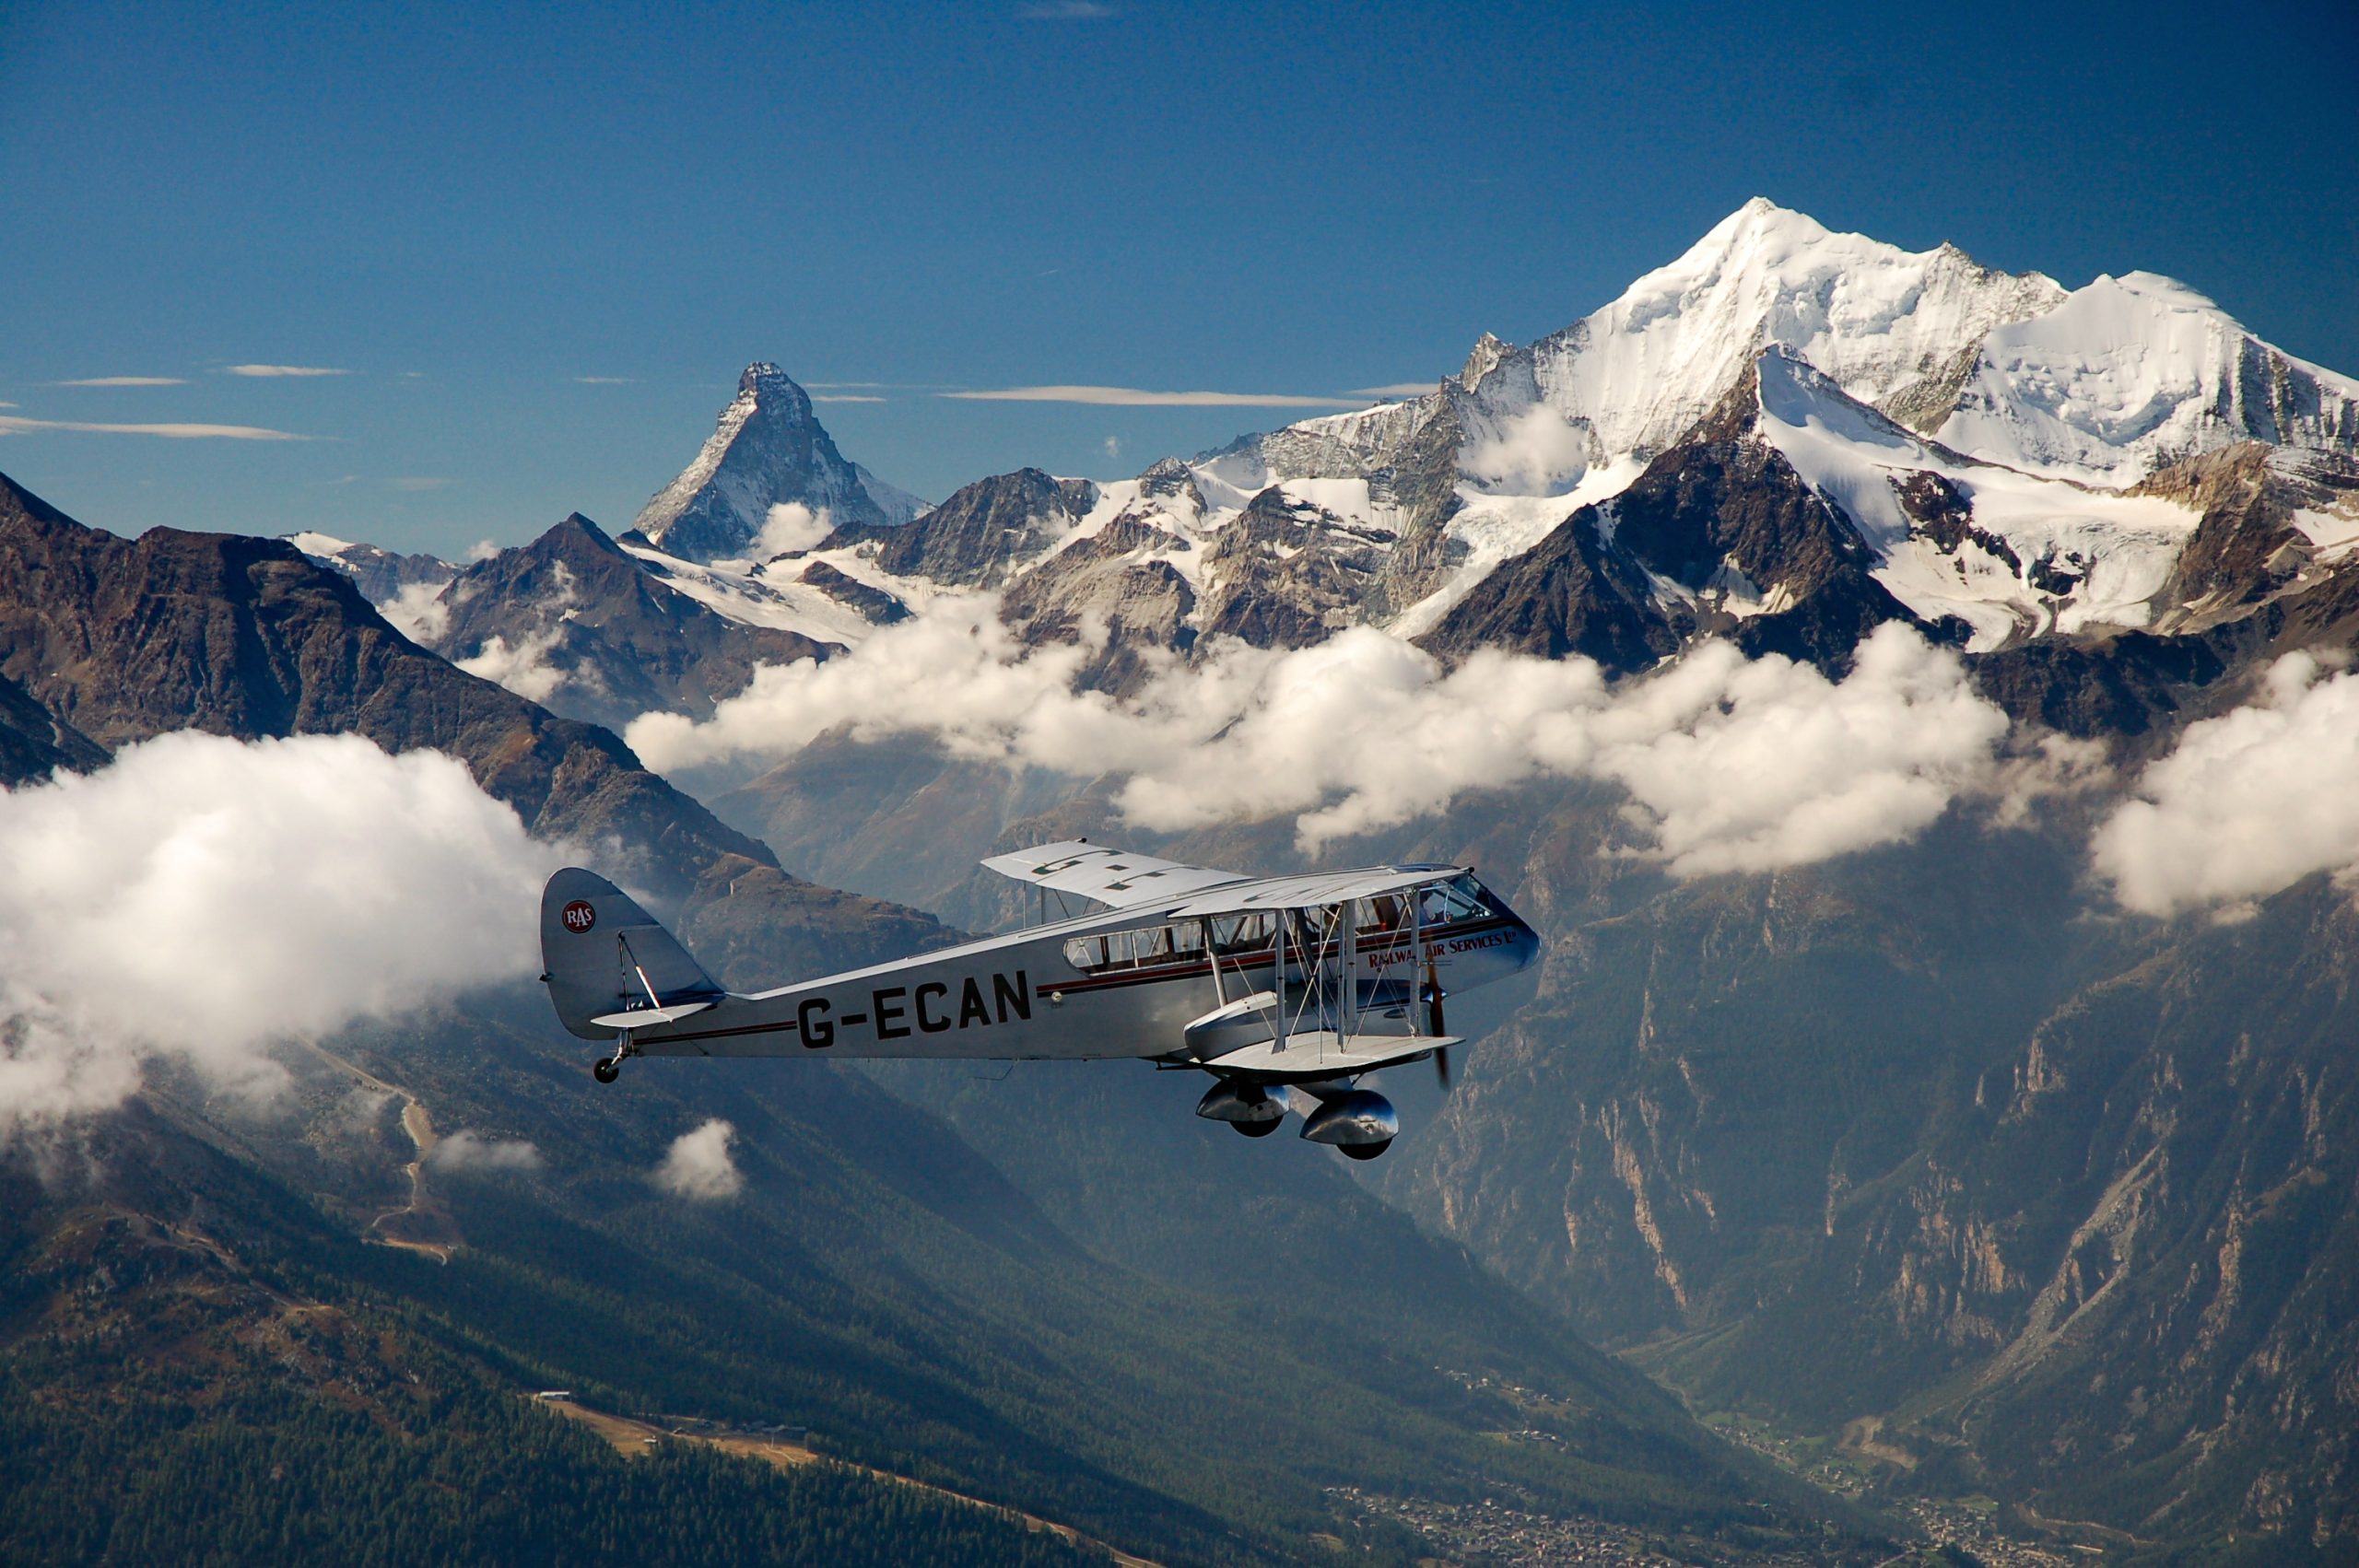 Royal Air Squadron aircraft in the Himalayas